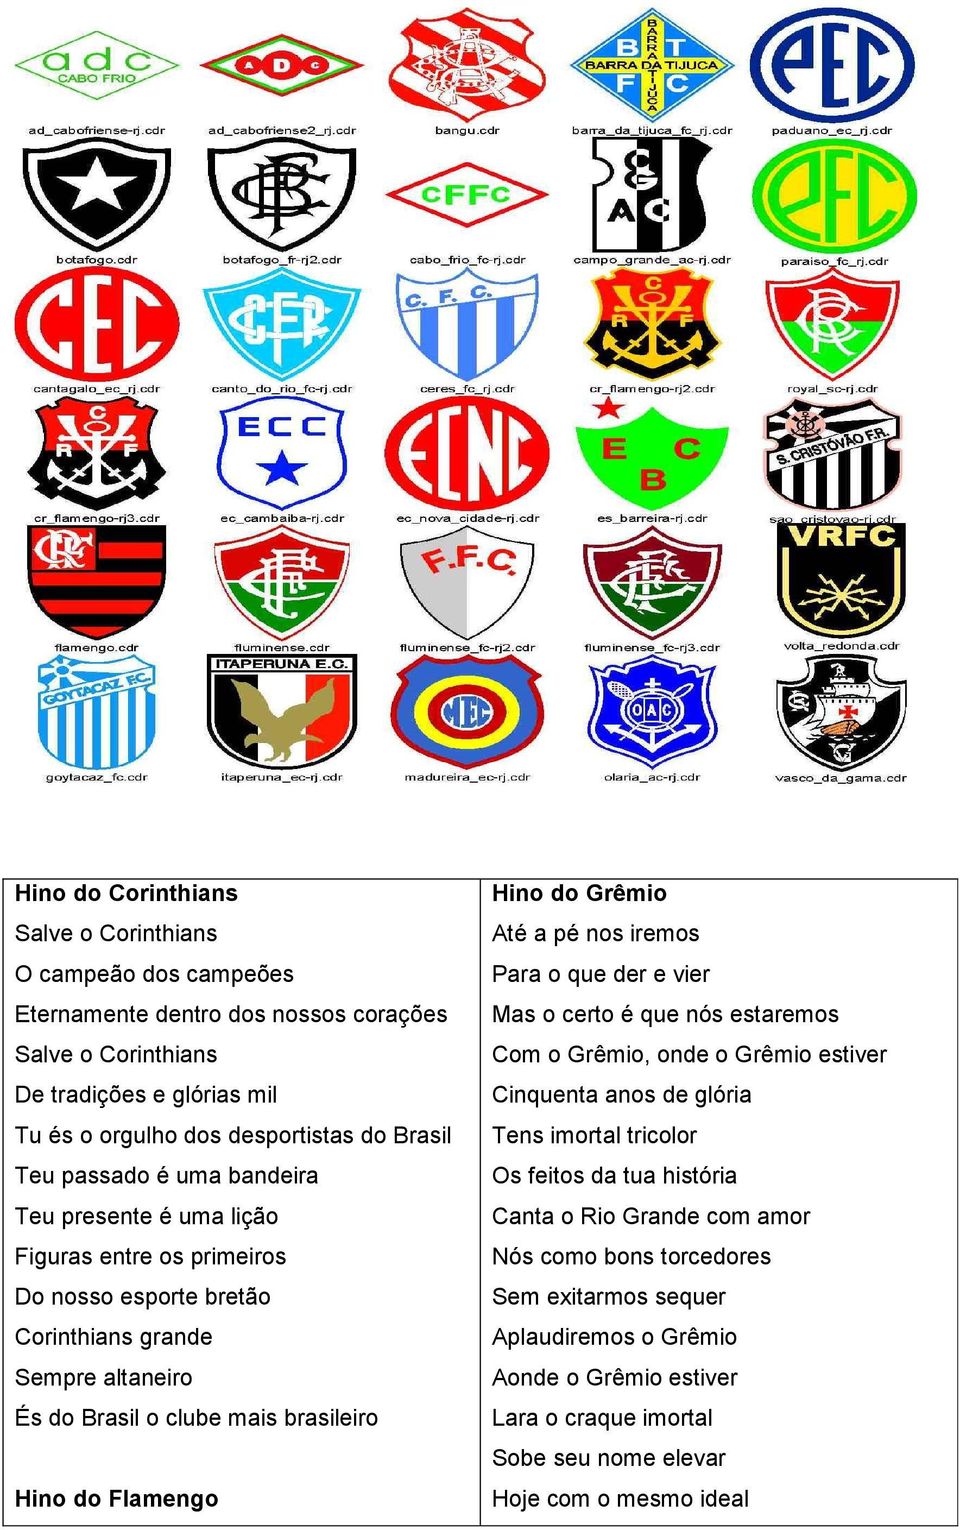 Flamengo Hino do Grêmio Até a pé nos iremos Para o que der e vier Mas o certo é que nós estaremos Com o Grêmio, onde o Grêmio estiver Cinquenta anos de glória Tens imortal tricolor Os feitos